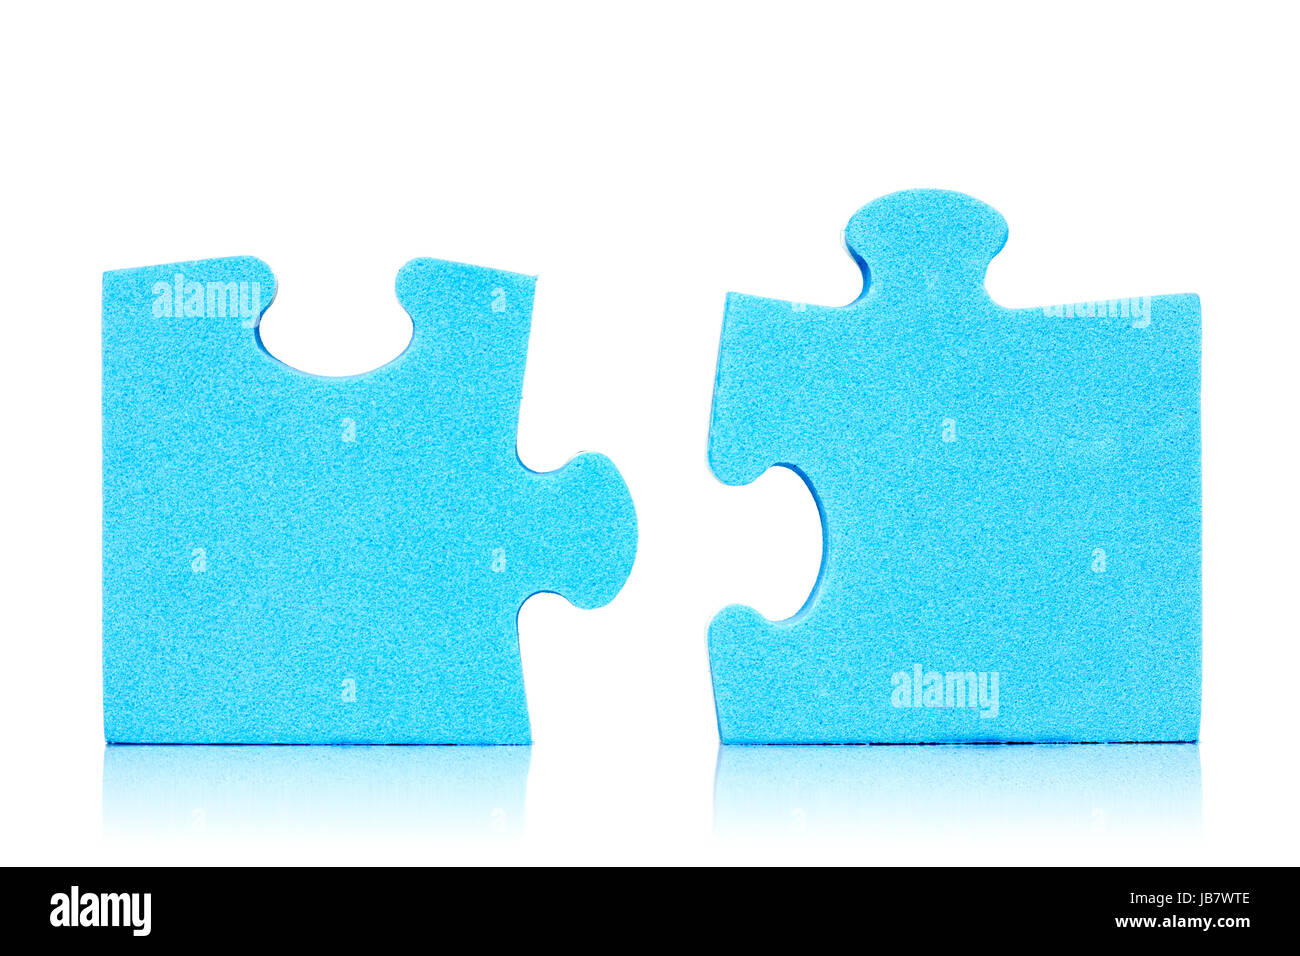 Conexión Dos piezas de puzzle azul sobre fondo blanco Fotografía de Alamy